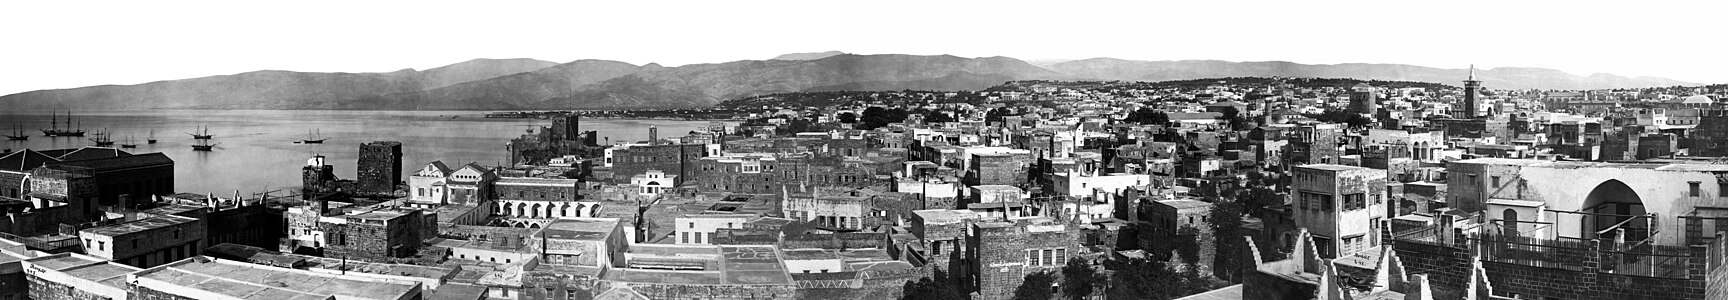 Cebel-i Lübnan'da üretilen ipeği Fransa'nın Marsilya limanına ihraç etmesiyle gelişen ve "Orta Doğu'nun Paris'i" olarak anılan Beyrut şehrinin panoramik görünümü. 1876'da Beyrut'a taşınmış Fransız fotoğrafçı Félix Bonfils tarafından çekilen dört fotoğrafın birleştirilmesiyle yapılmıştır. (Beyrut Vilayeti, Osmanlı Devleti, 1867-1899). (Üreten: Félix Bonfils)